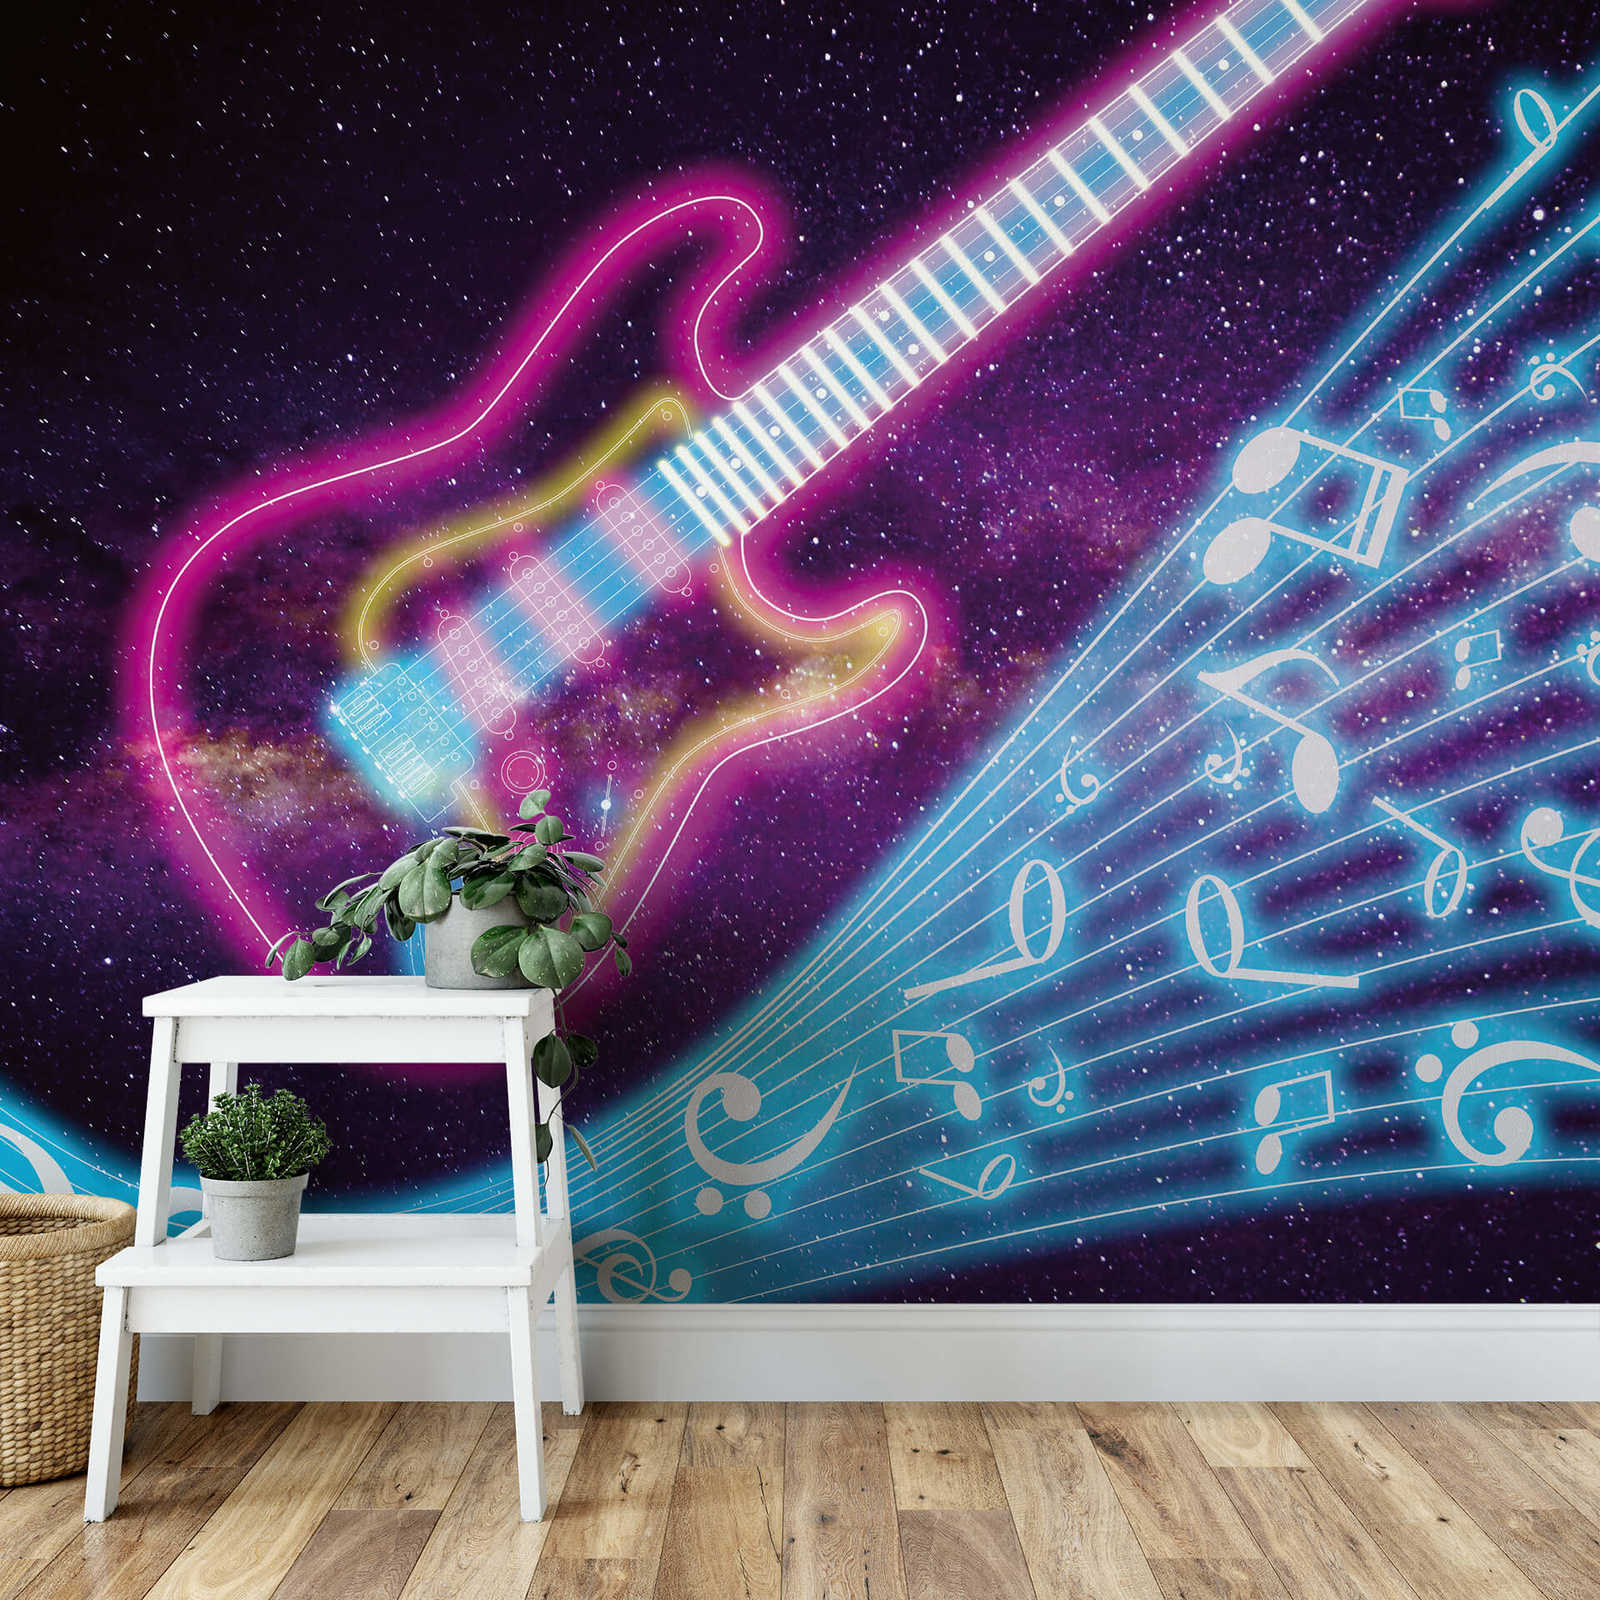             Fototapete Musik mit Galaxie & Neon Design – Violett, Türkis
        